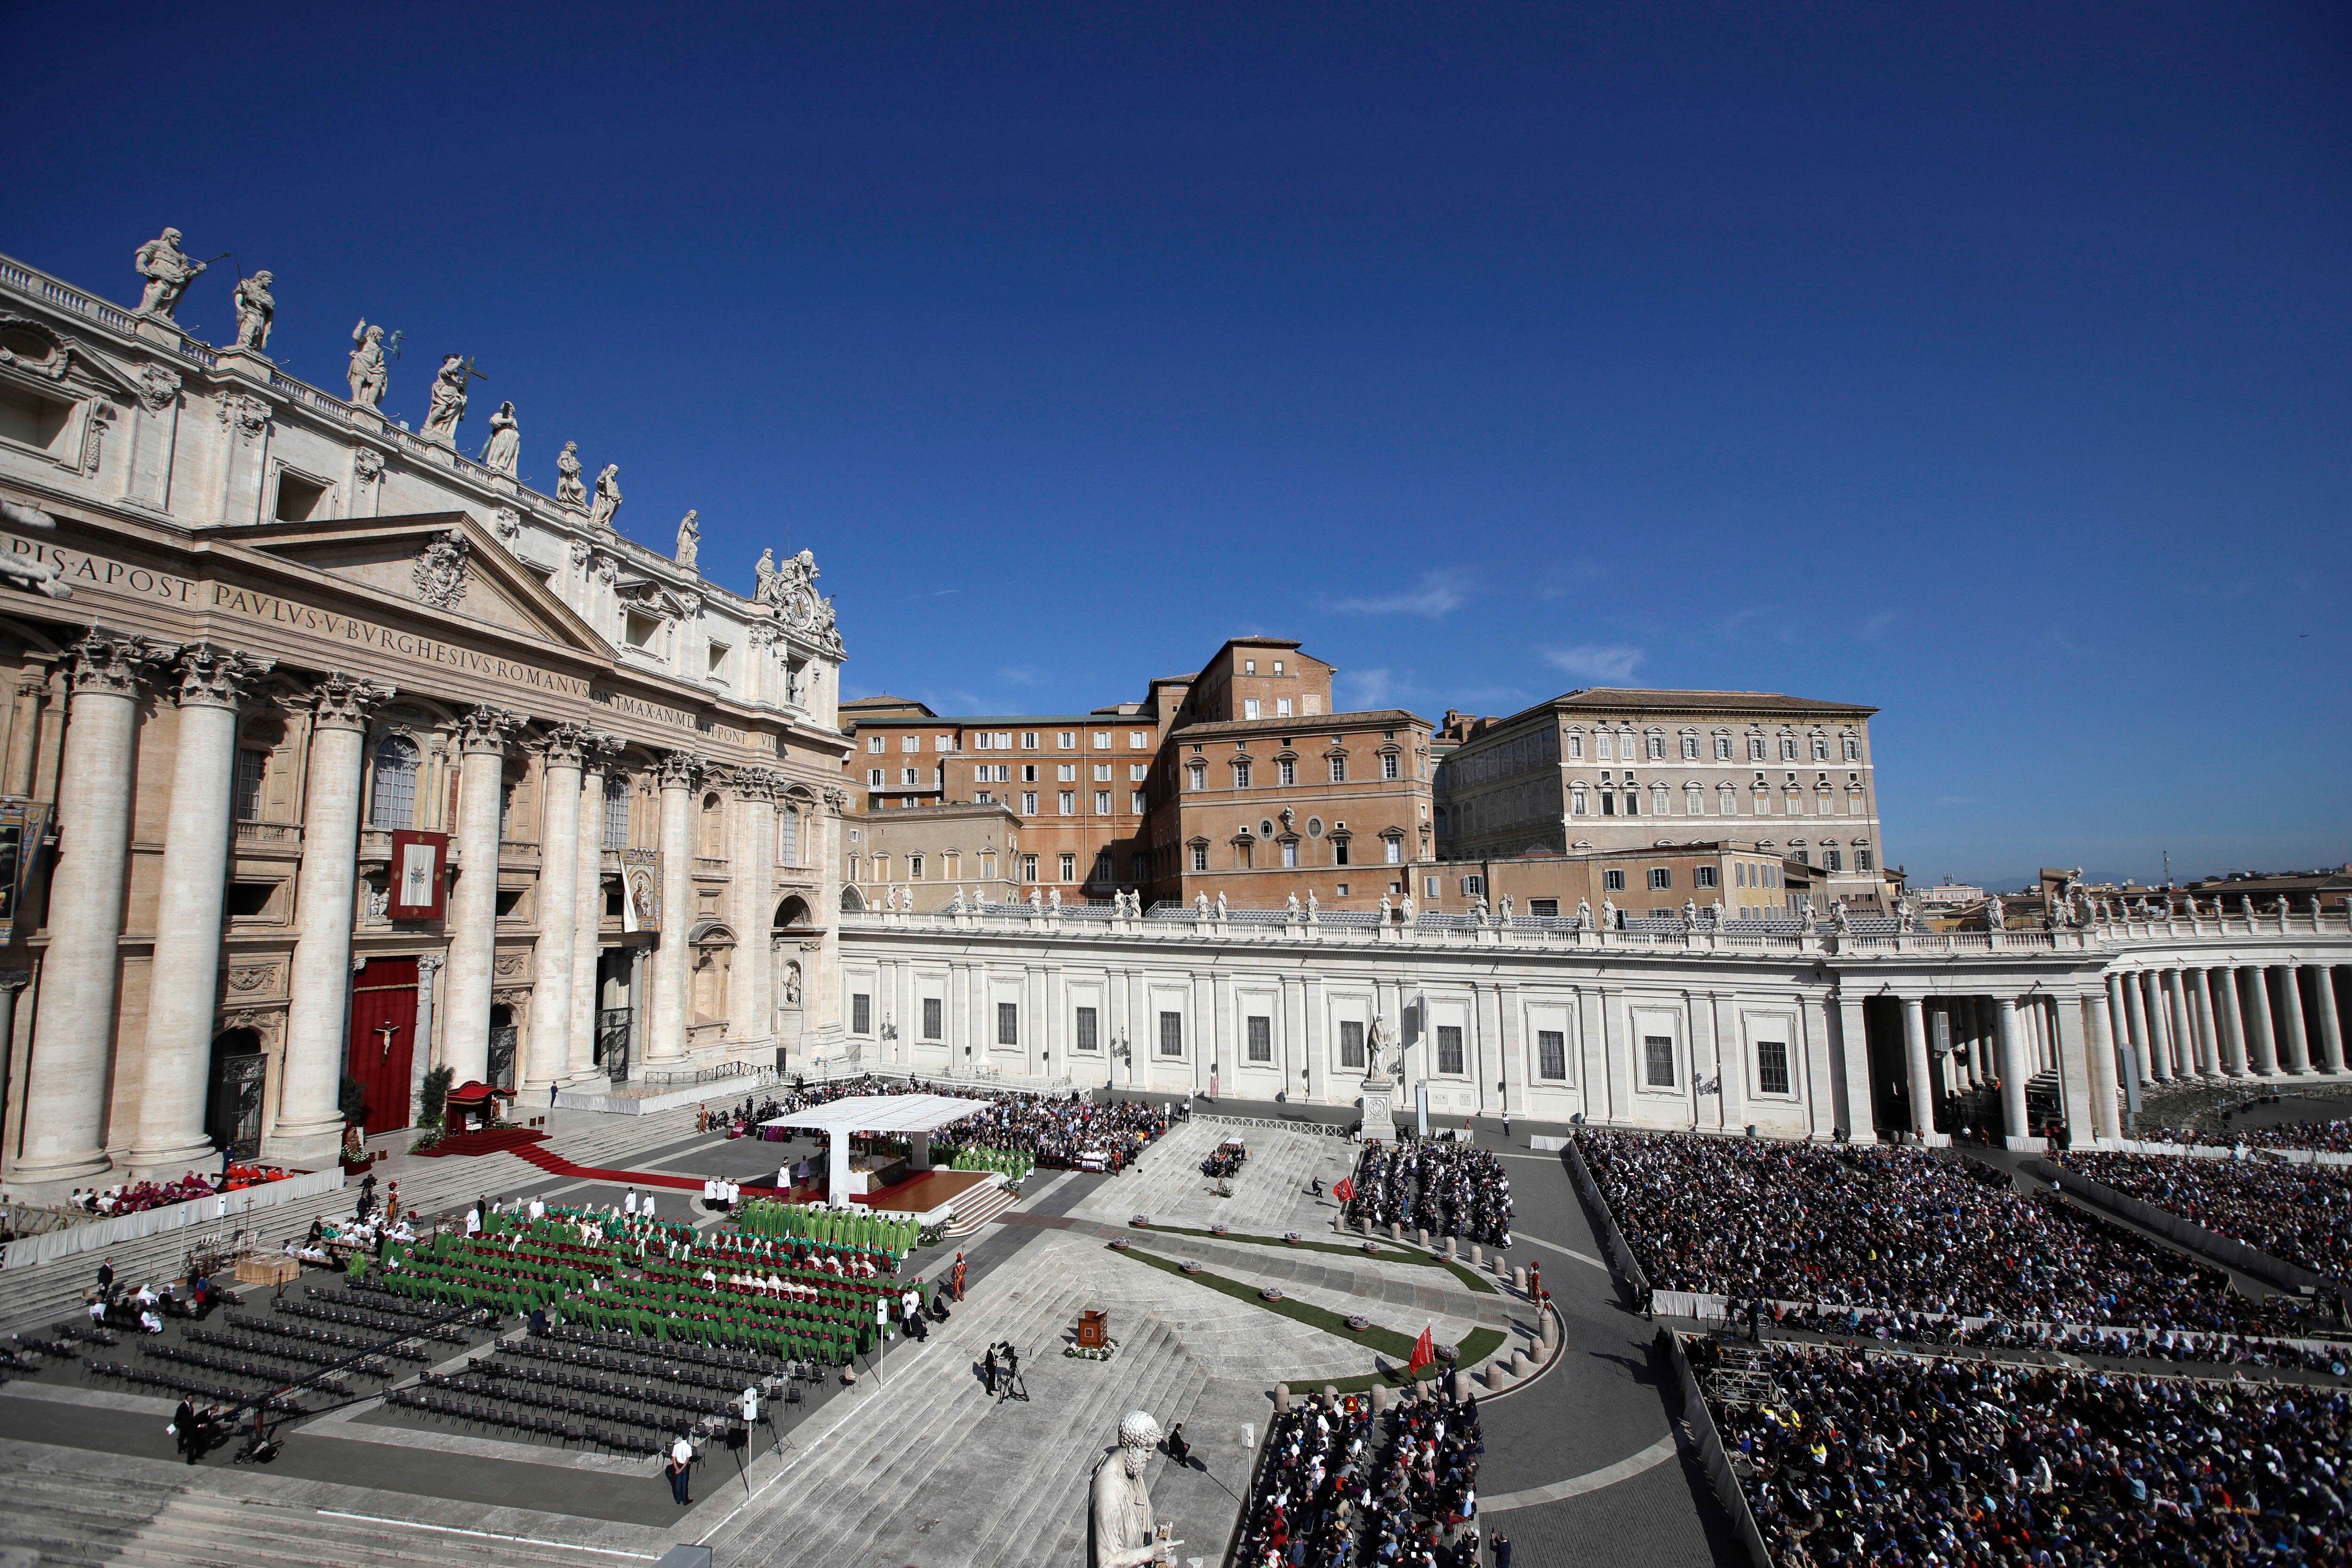 Una vista de la Plaza de San Pedro, en el Vaticano, durante una Misa celebrada por el Papa Francisco para la apertura de un sínodo, una reunión de obispos el miércoles 3 de octubre de 2018. Imagen con fines ilustrativos.